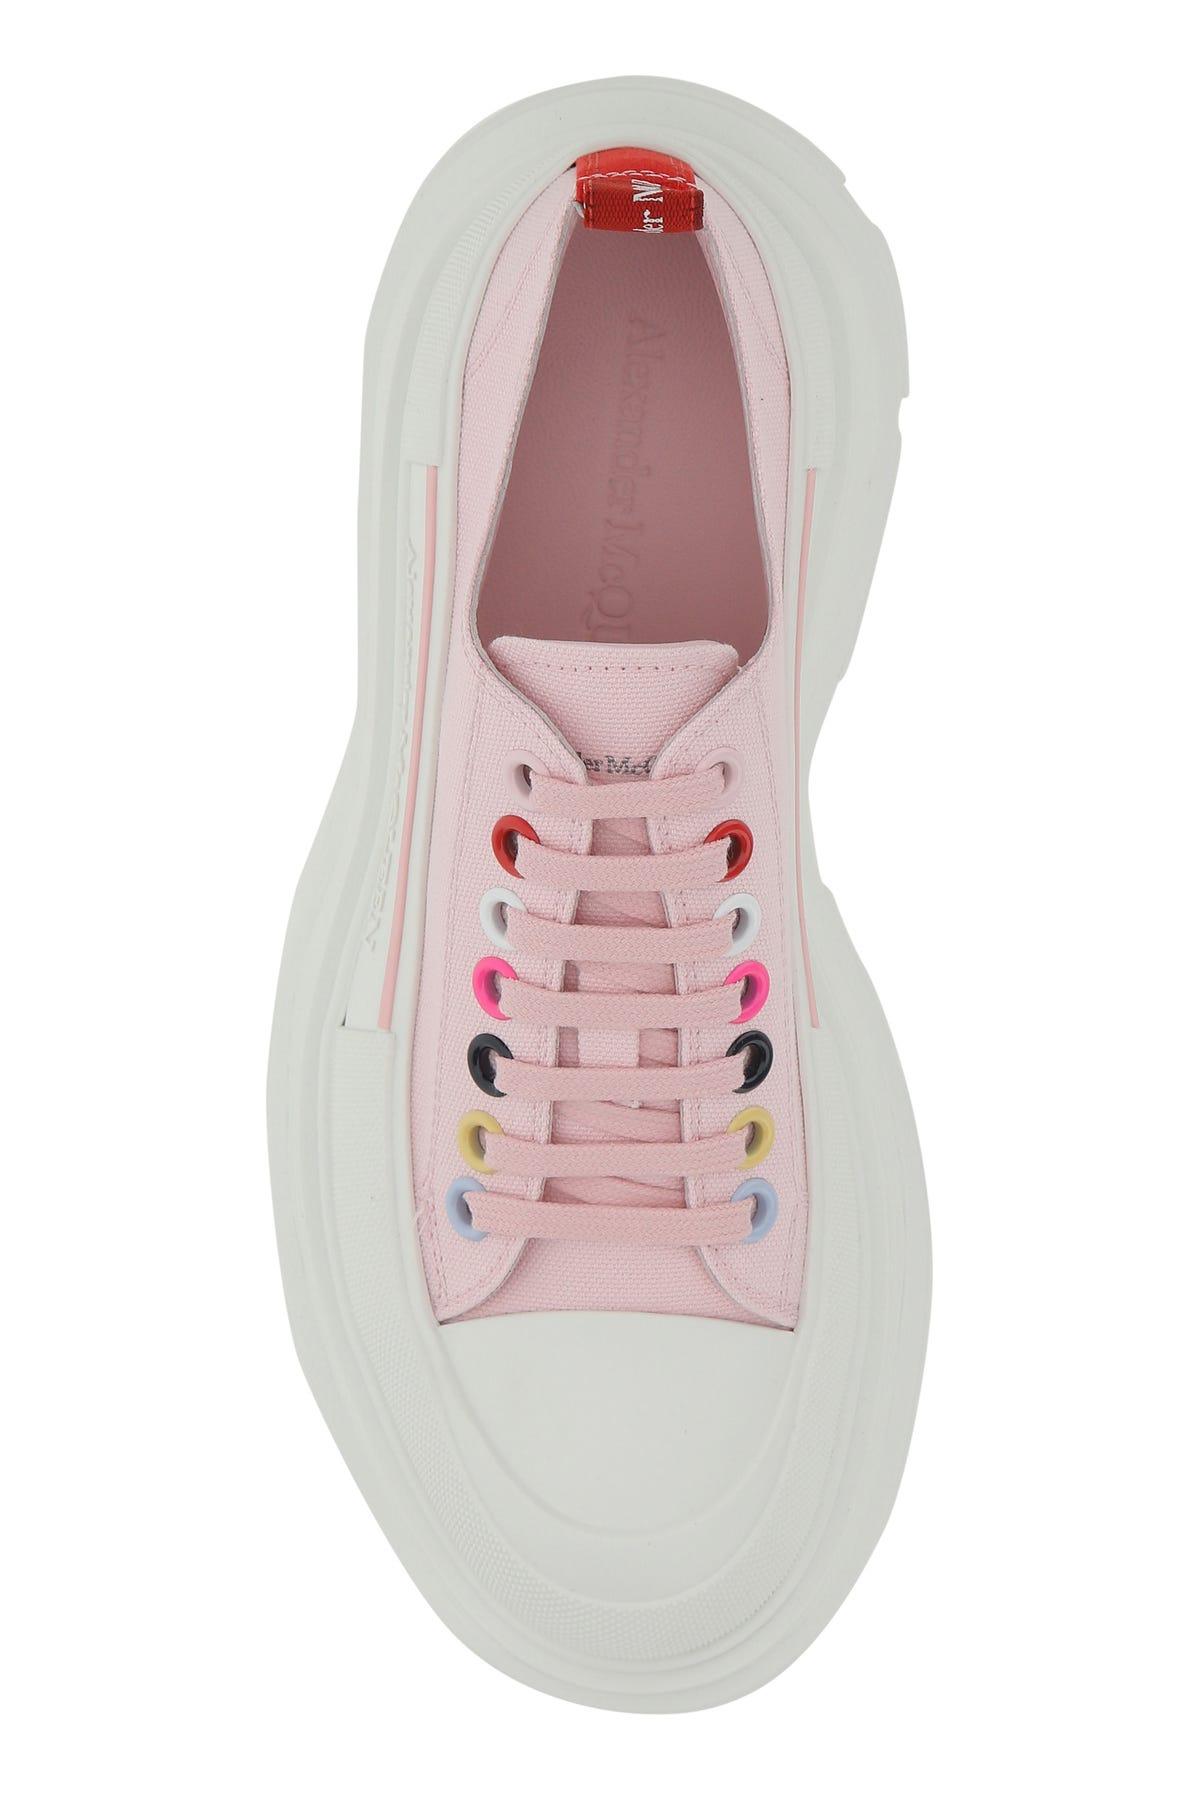 Alexander McQueen Canvas Tread Slick Sneakers Alexa in Pink - Lyst